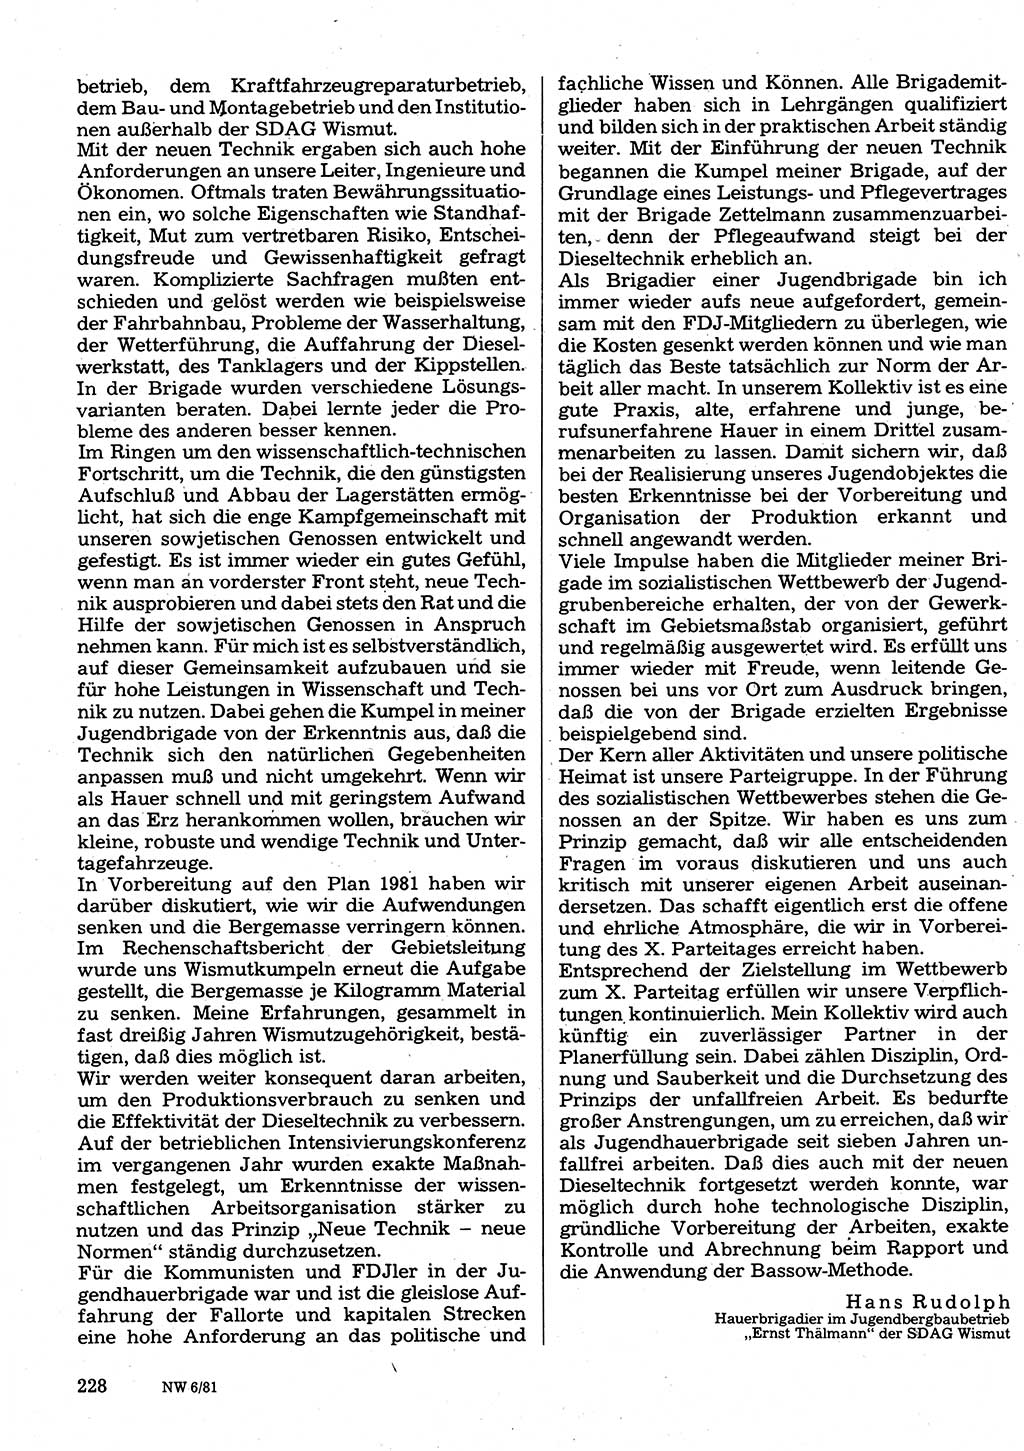 Neuer Weg (NW), Organ des Zentralkomitees (ZK) der SED (Sozialistische Einheitspartei Deutschlands) für Fragen des Parteilebens, 36. Jahrgang [Deutsche Demokratische Republik (DDR)] 1981, Seite 228 (NW ZK SED DDR 1981, S. 228)